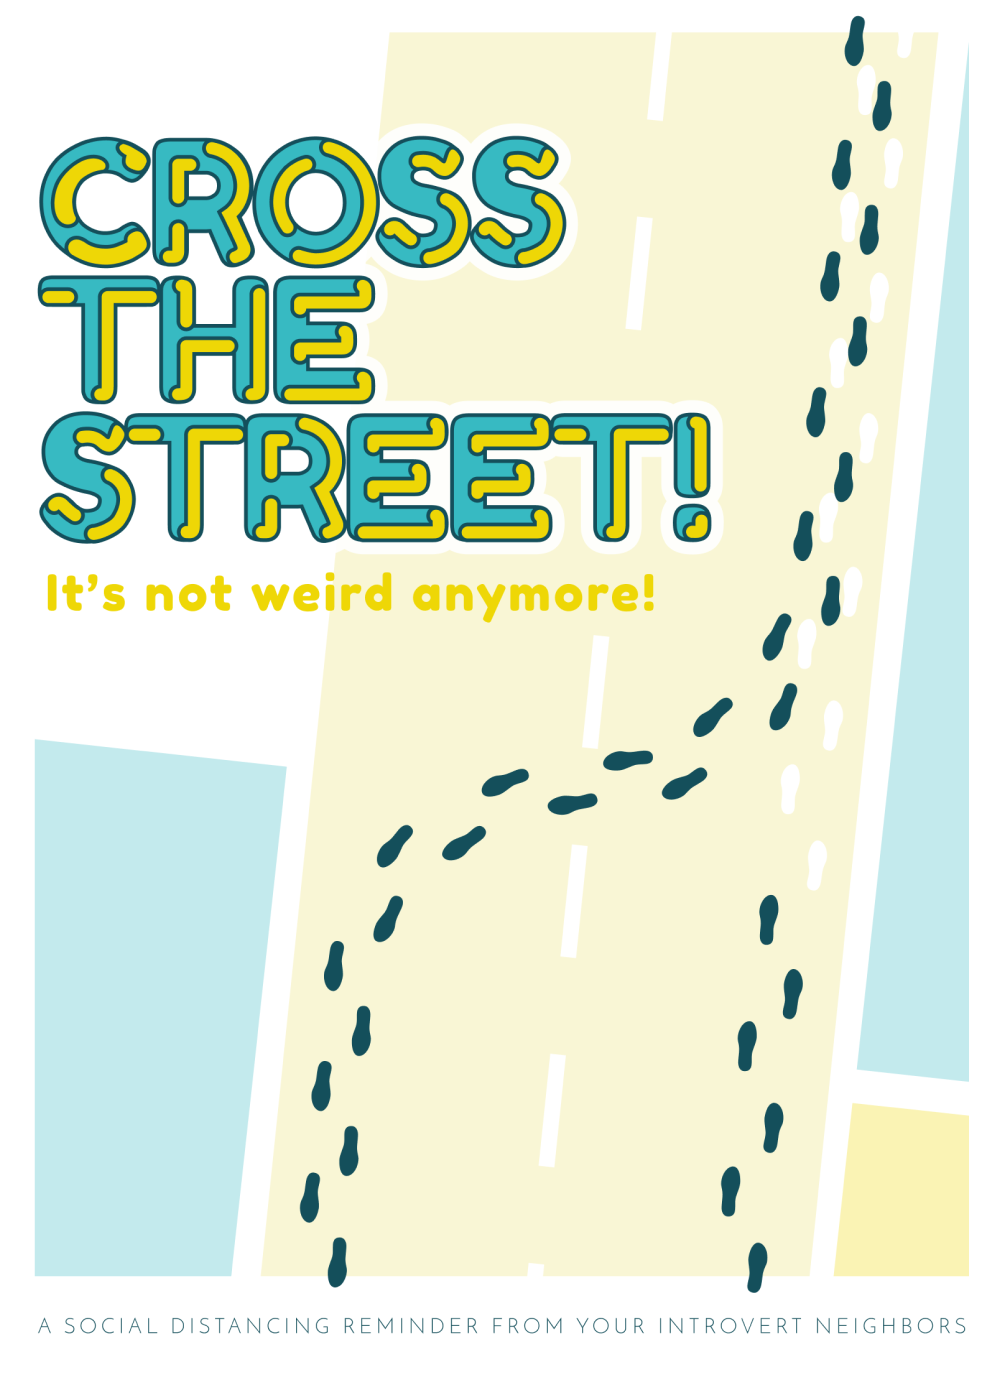 Cross the street! It's not weird anymore!